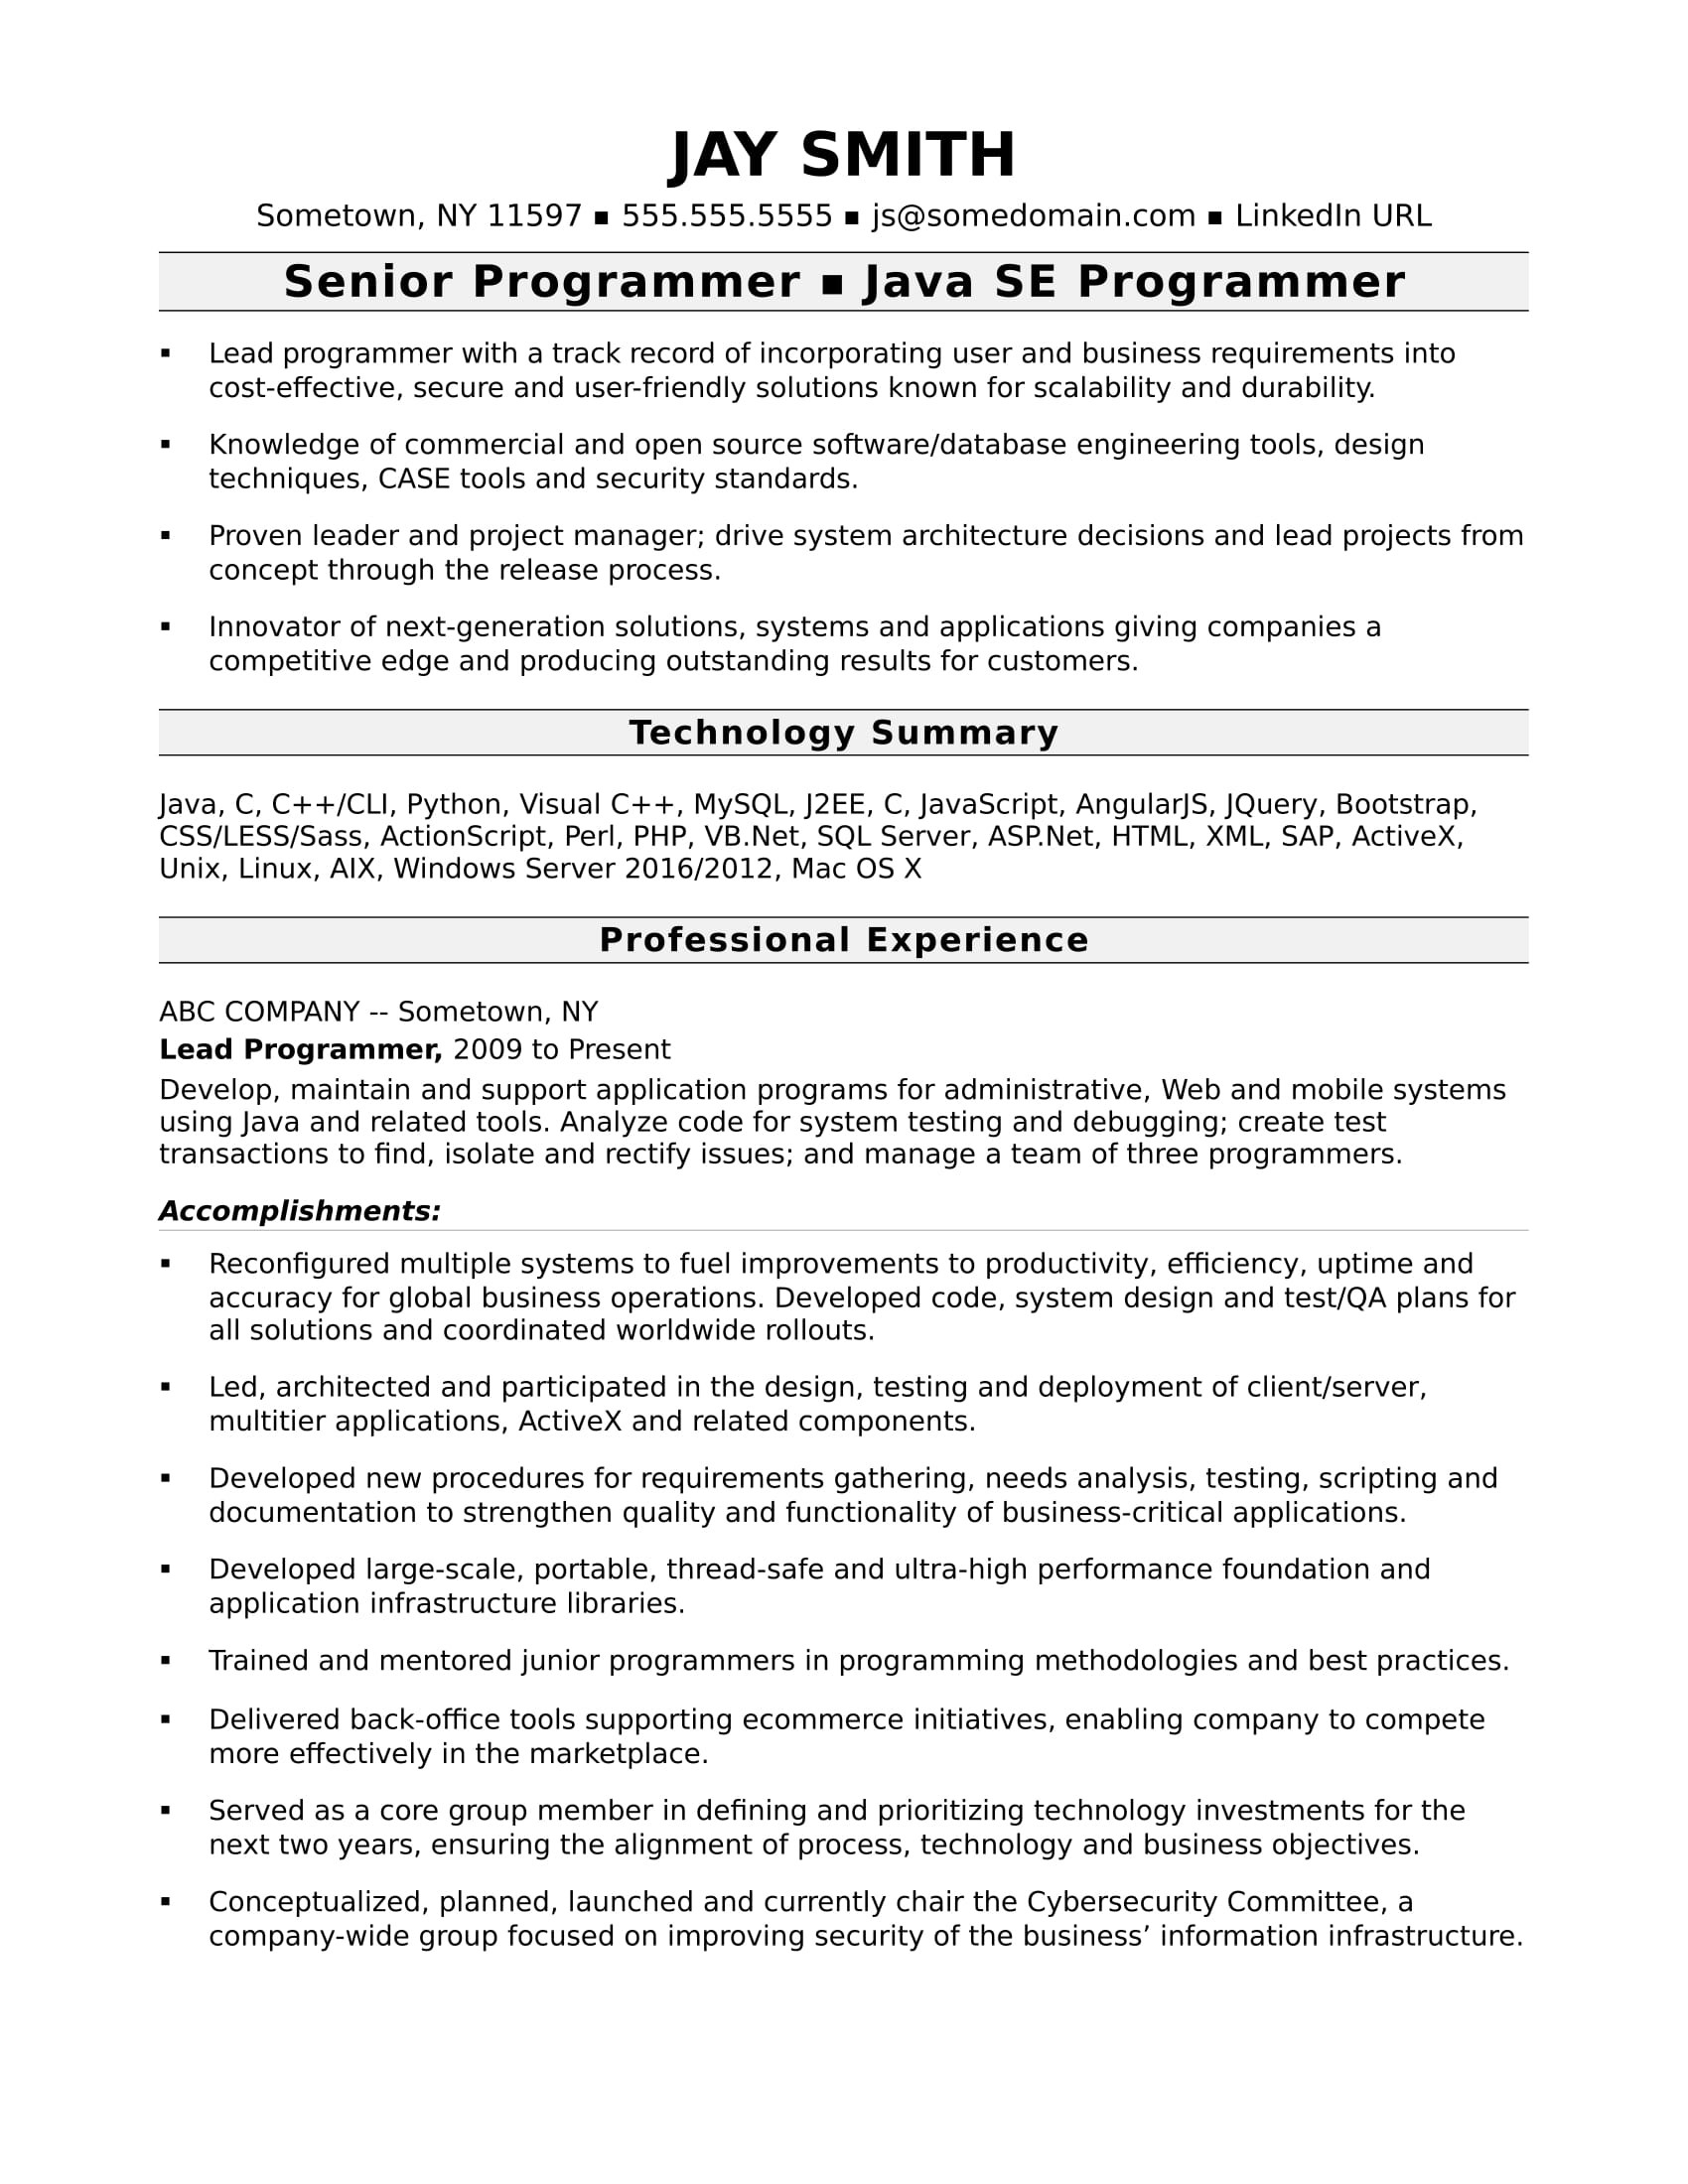 Net with Vb Script Sample Resume Programmer Resume Template Monster.com